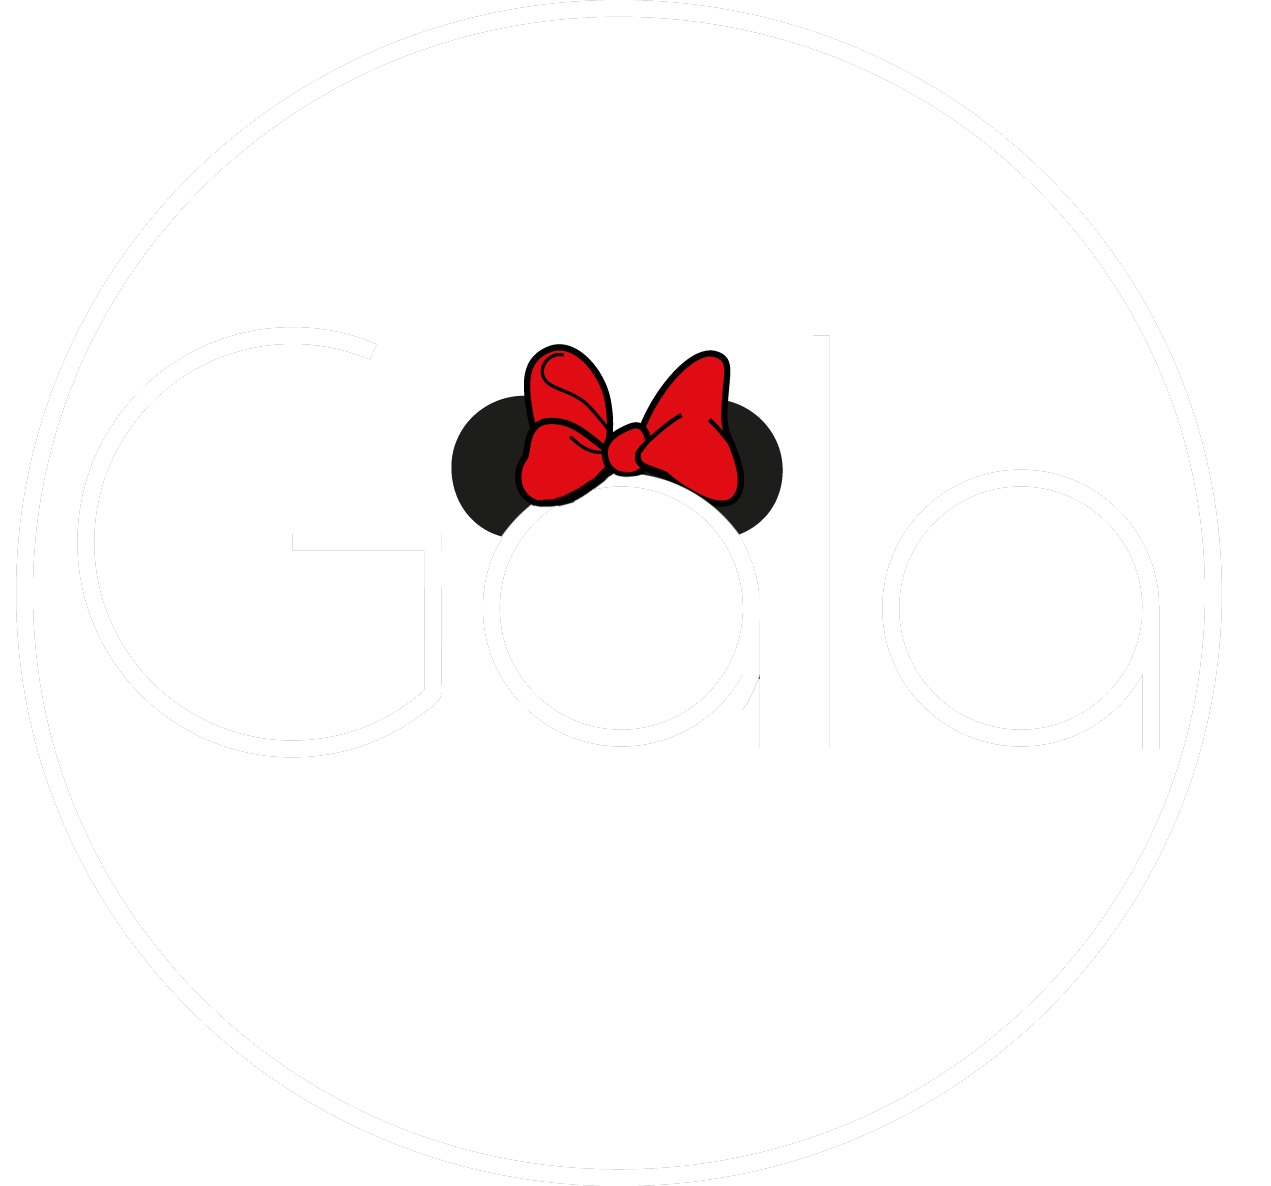 Gala Abbigliamento - Il Shop Online